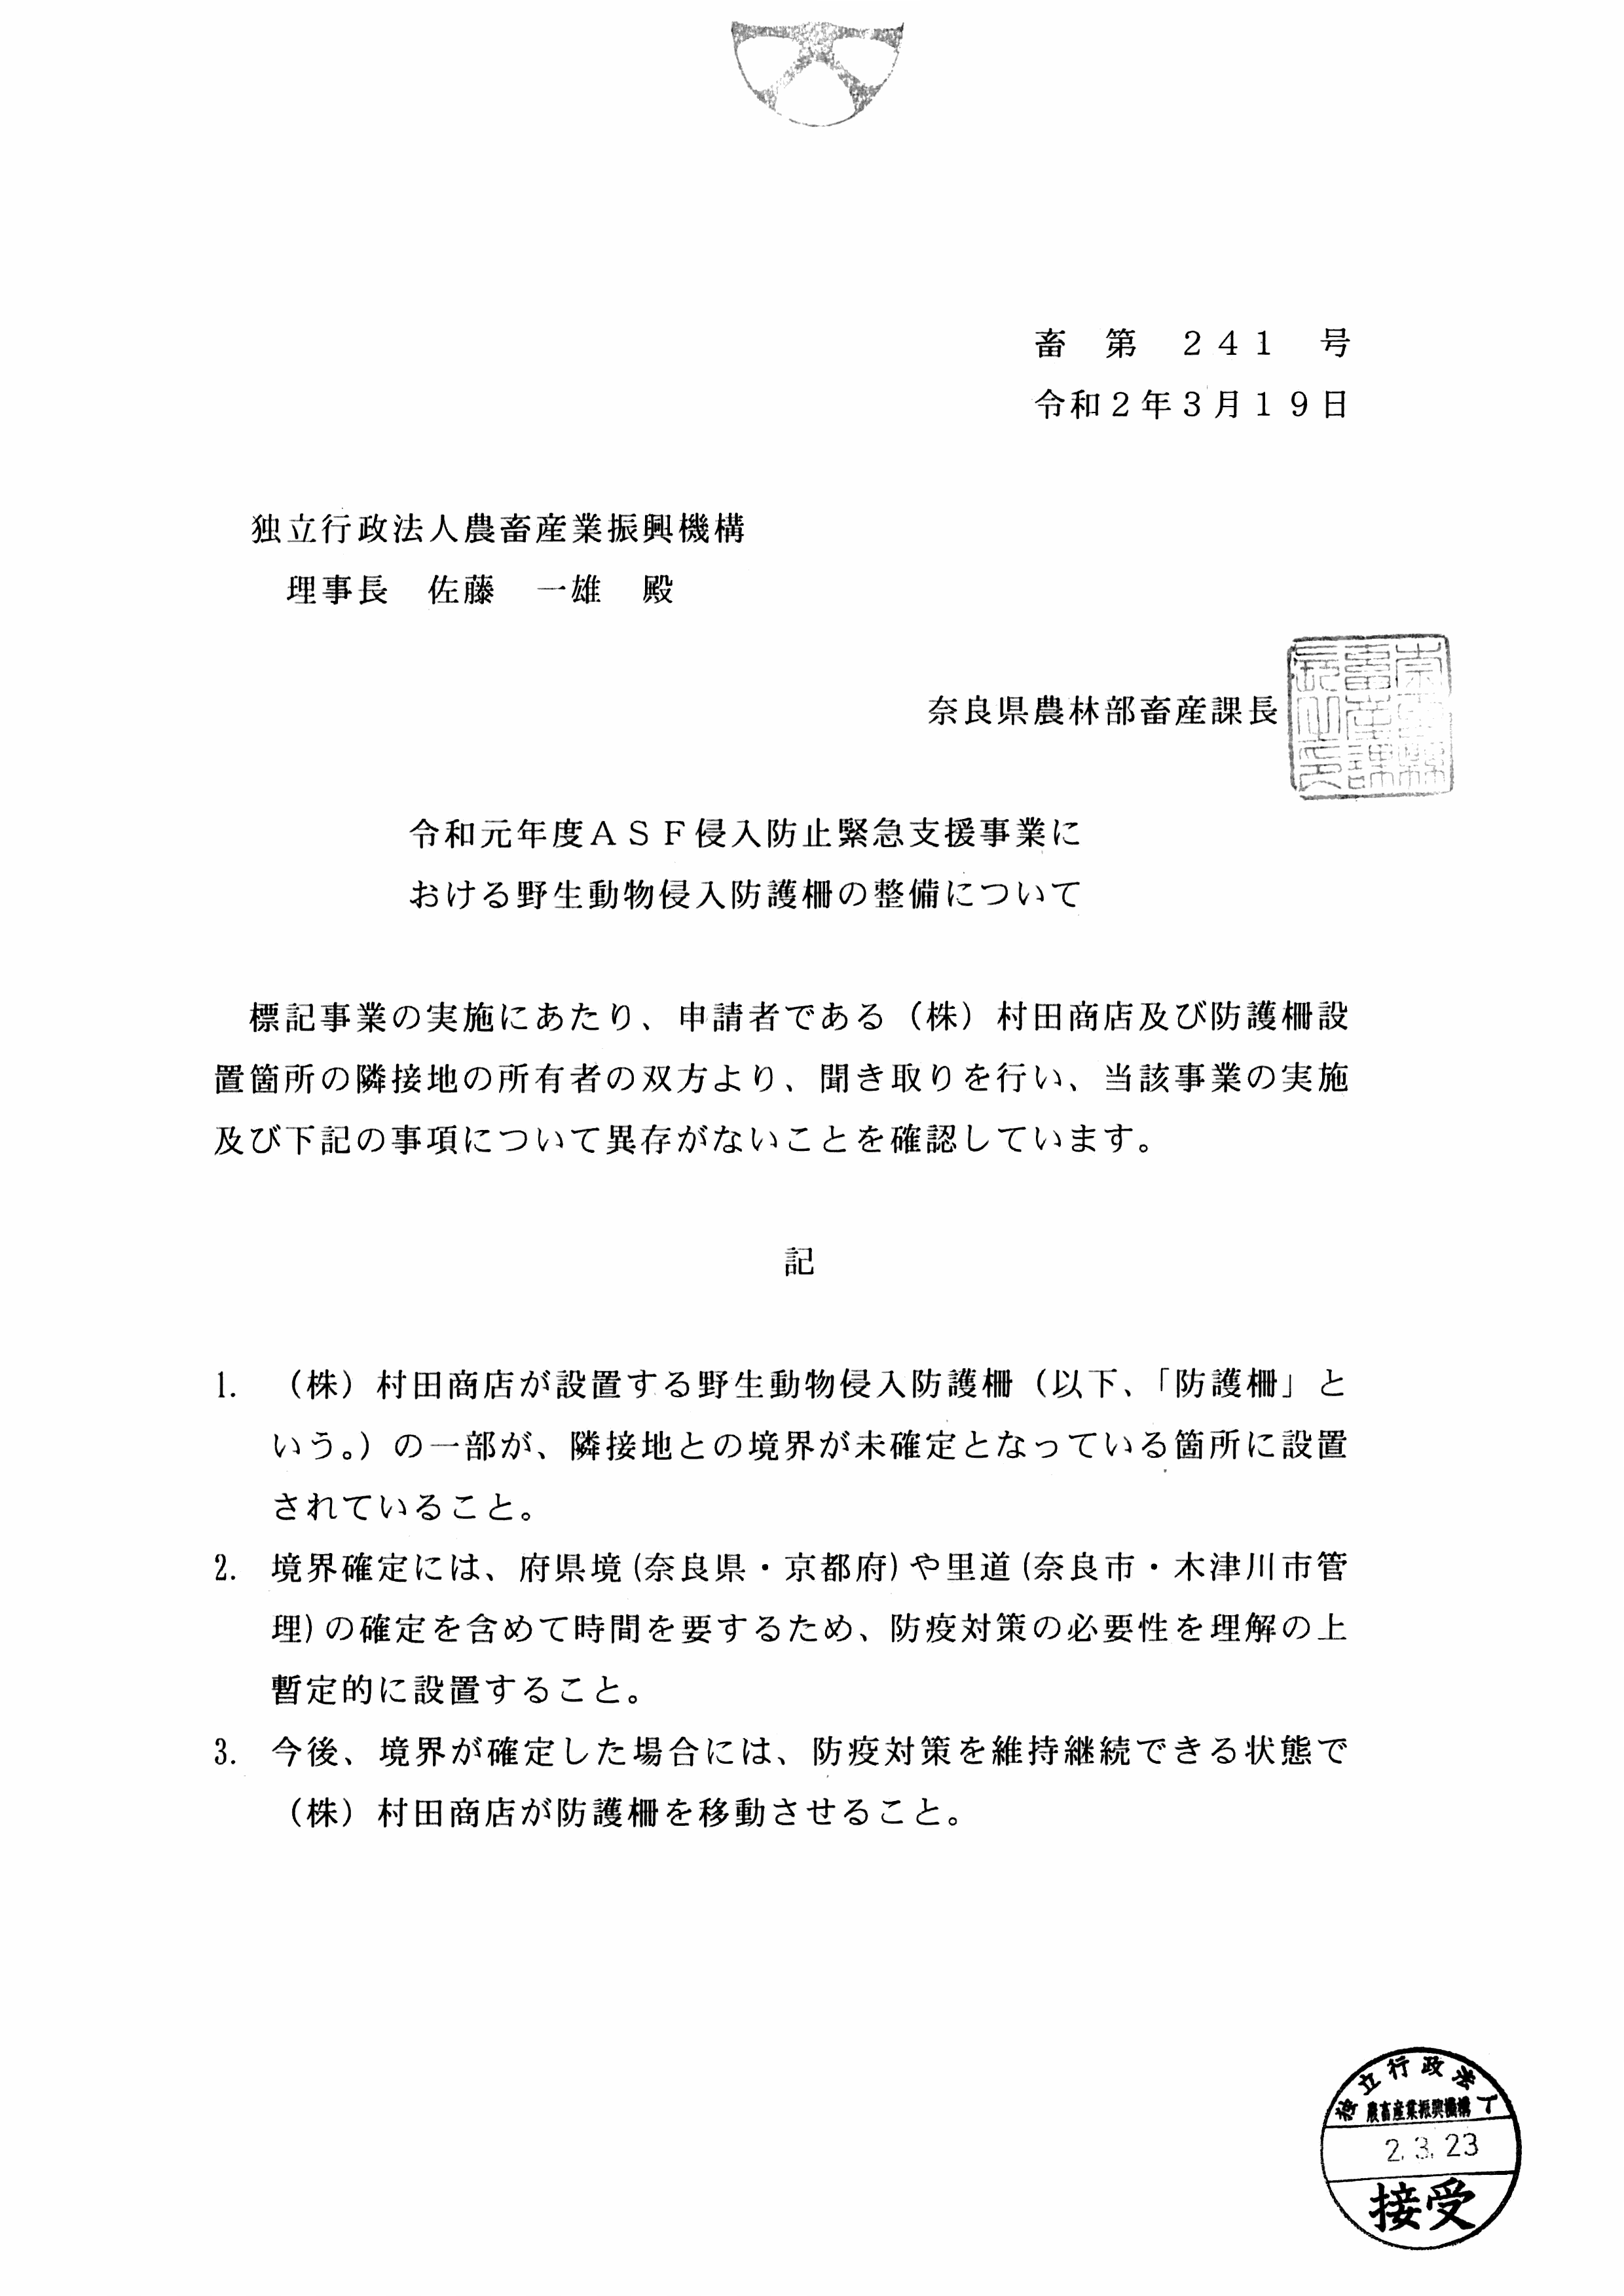 奈良県畜産課長が作成した虚偽有印公文書